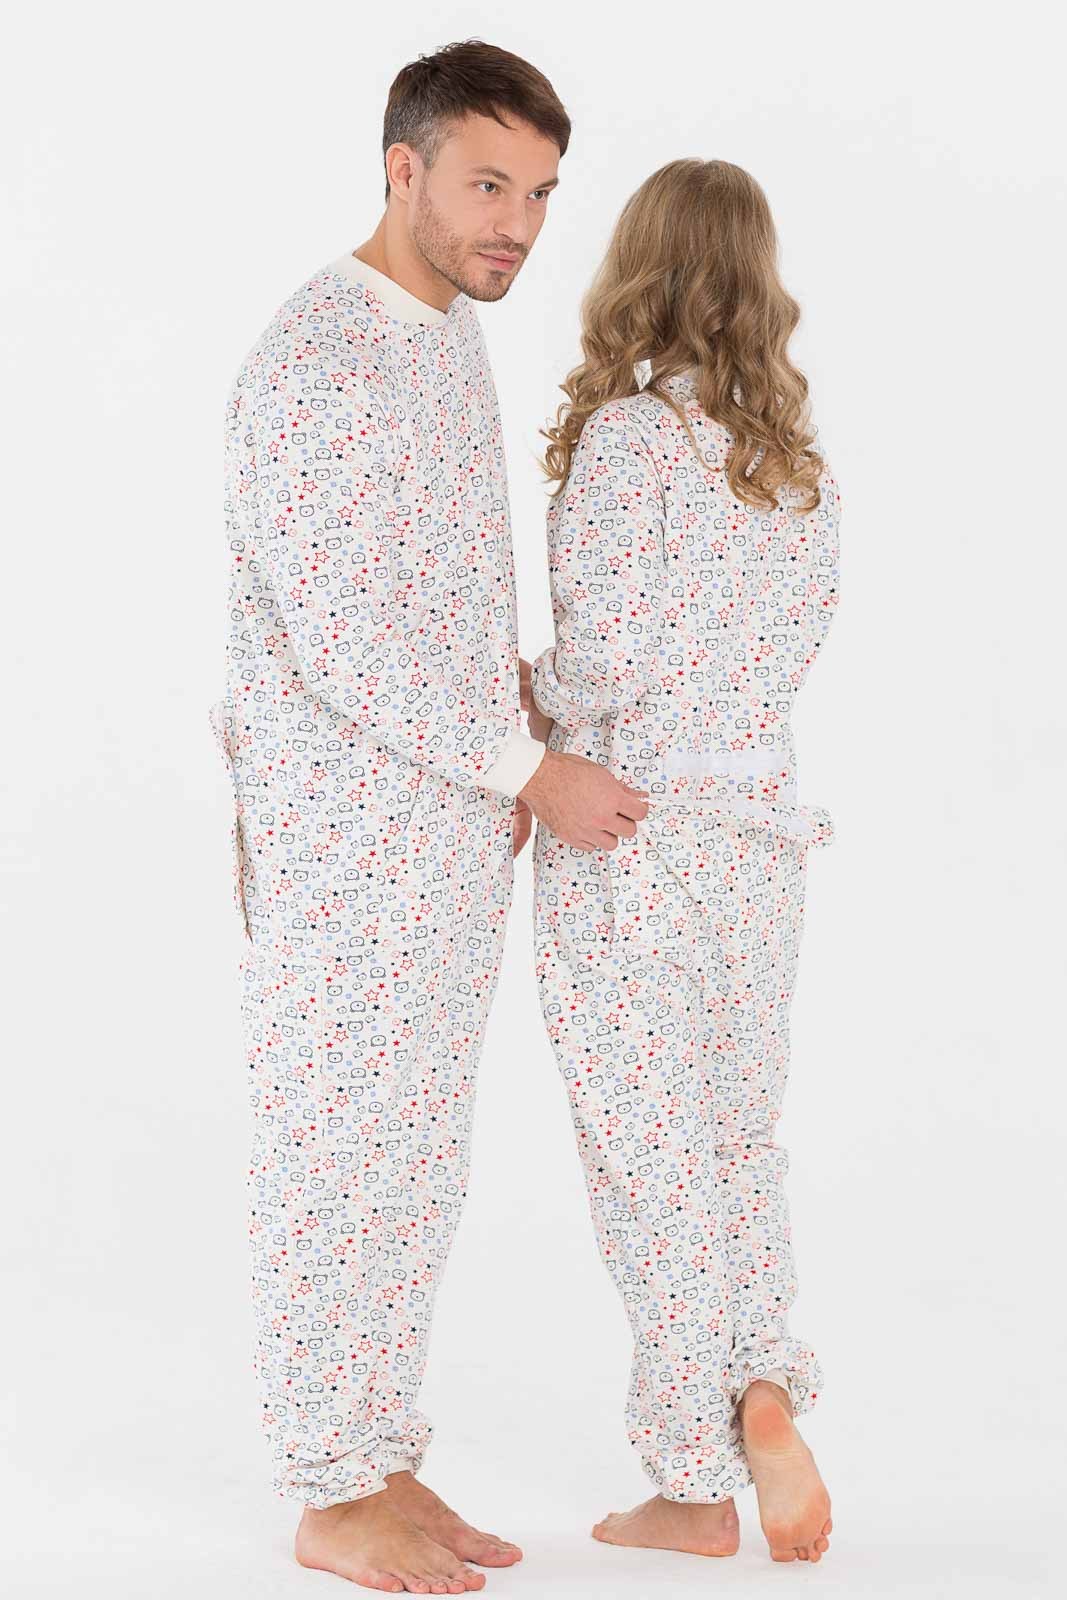 Валберис теплые пижамы. Пижама комбинезон. Пижама комбинезон мужская. Пижама с карманом. Пижама комбинезон женская.